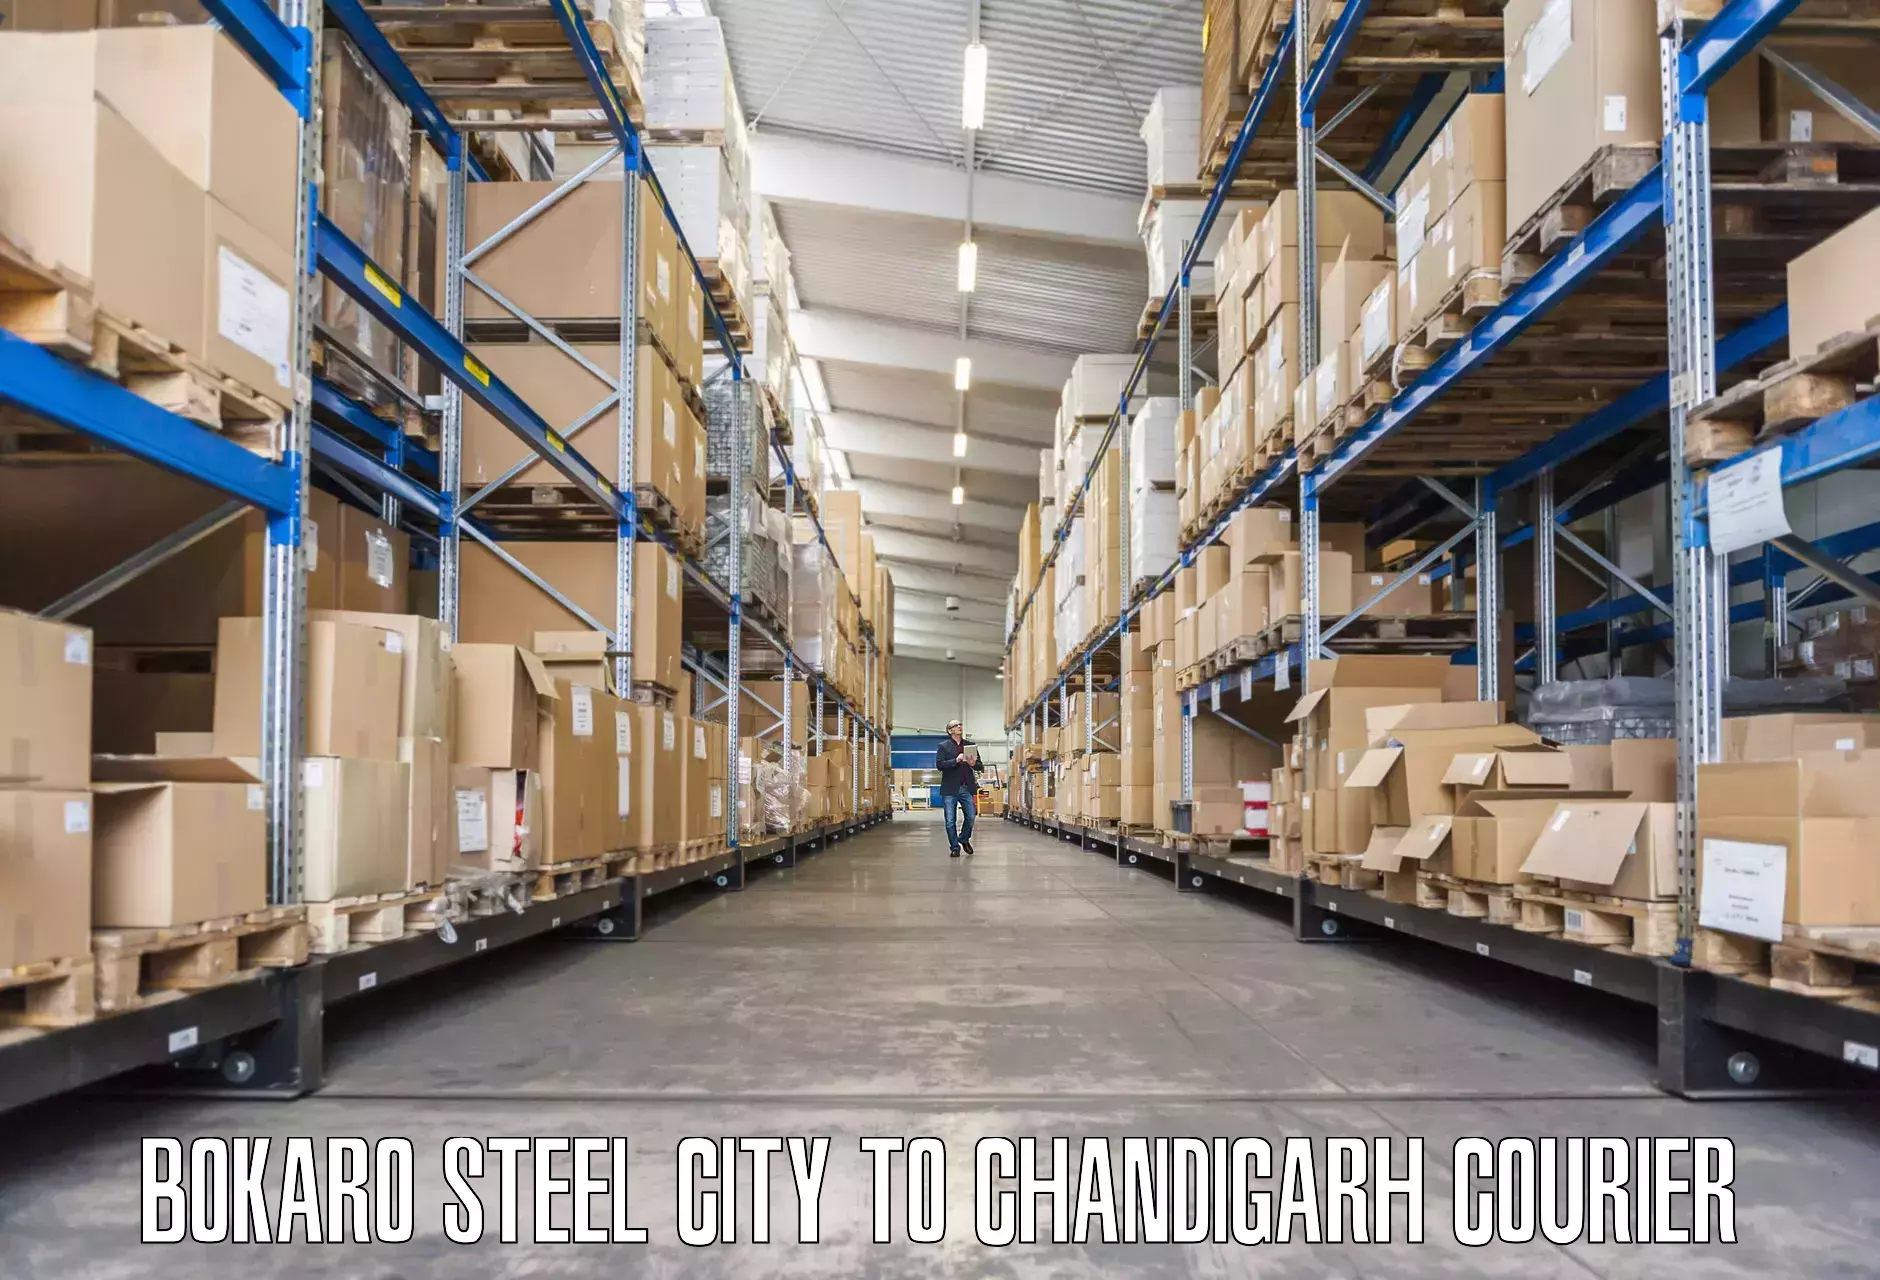 Efficient furniture transport in Bokaro Steel City to Chandigarh